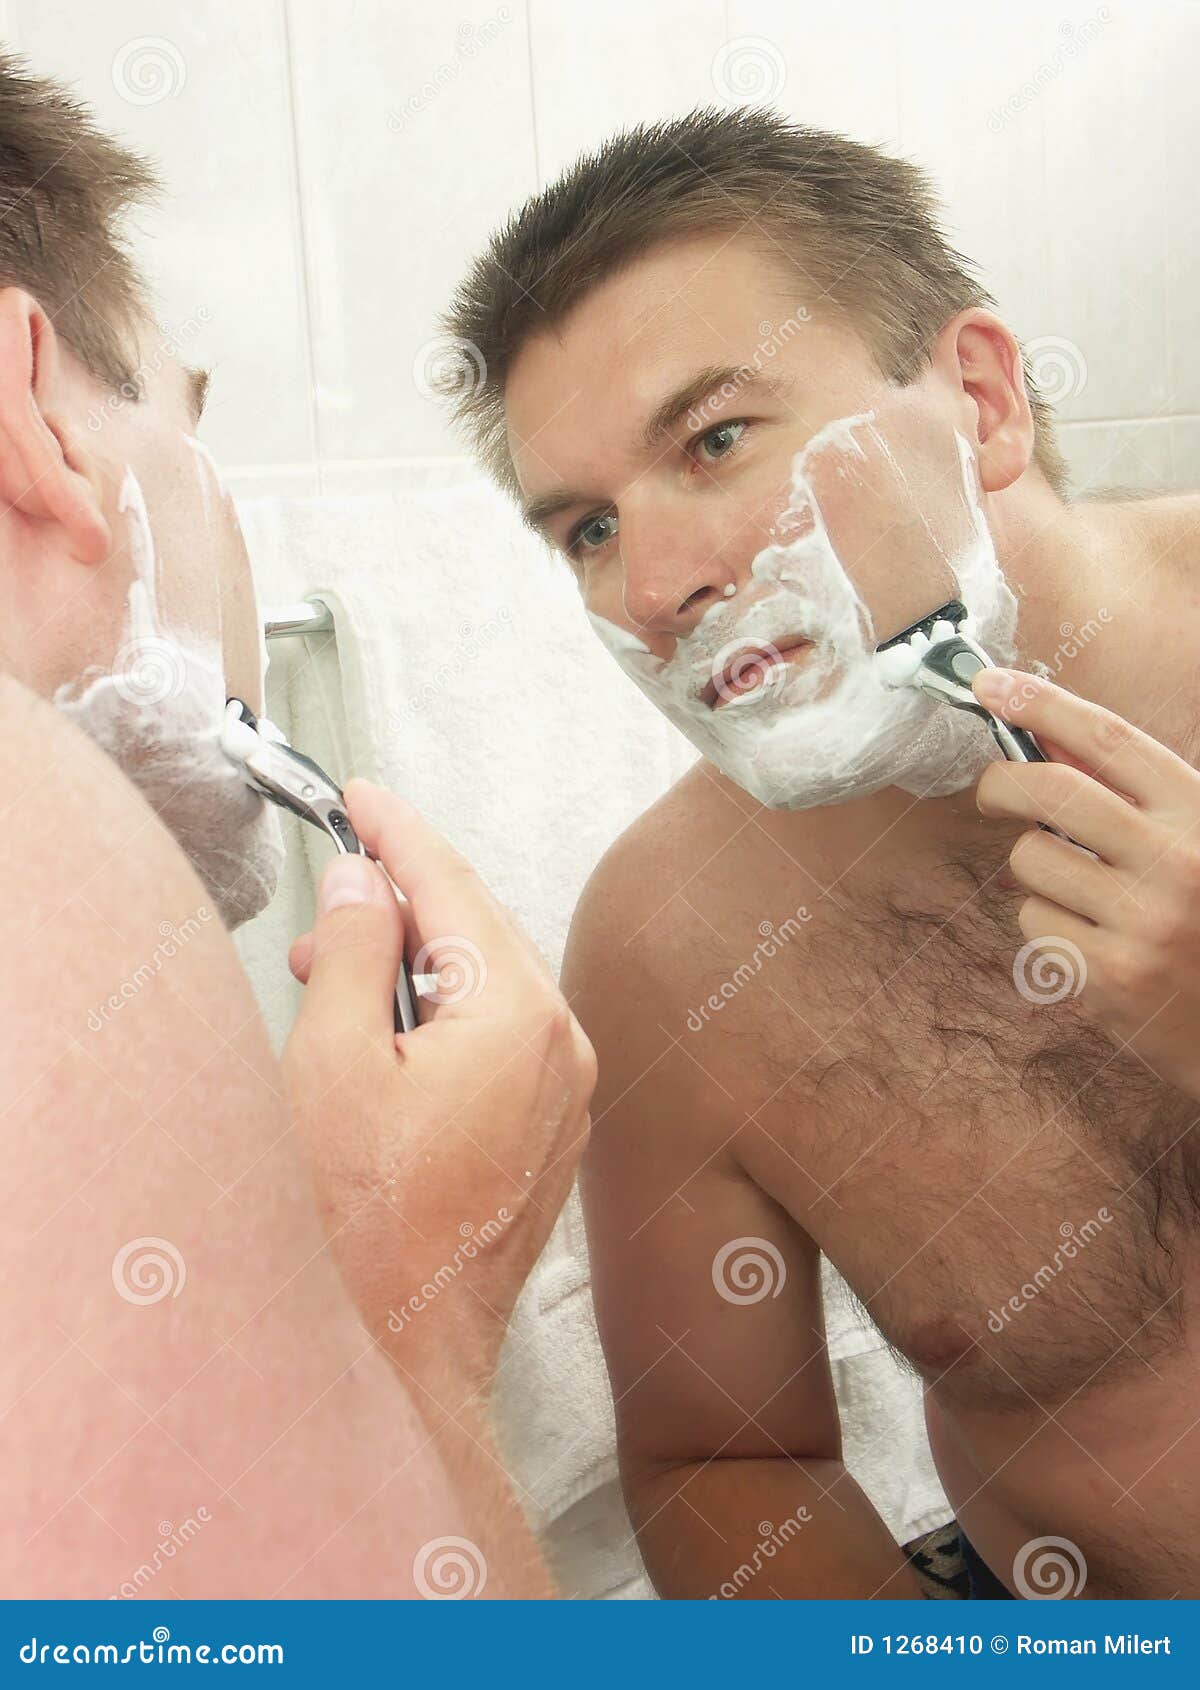 Мужчины бреет видео. Мужчина бреется. Бритье в ванной. Мужчина бреет лицо. Мужчина бреется в ванной.